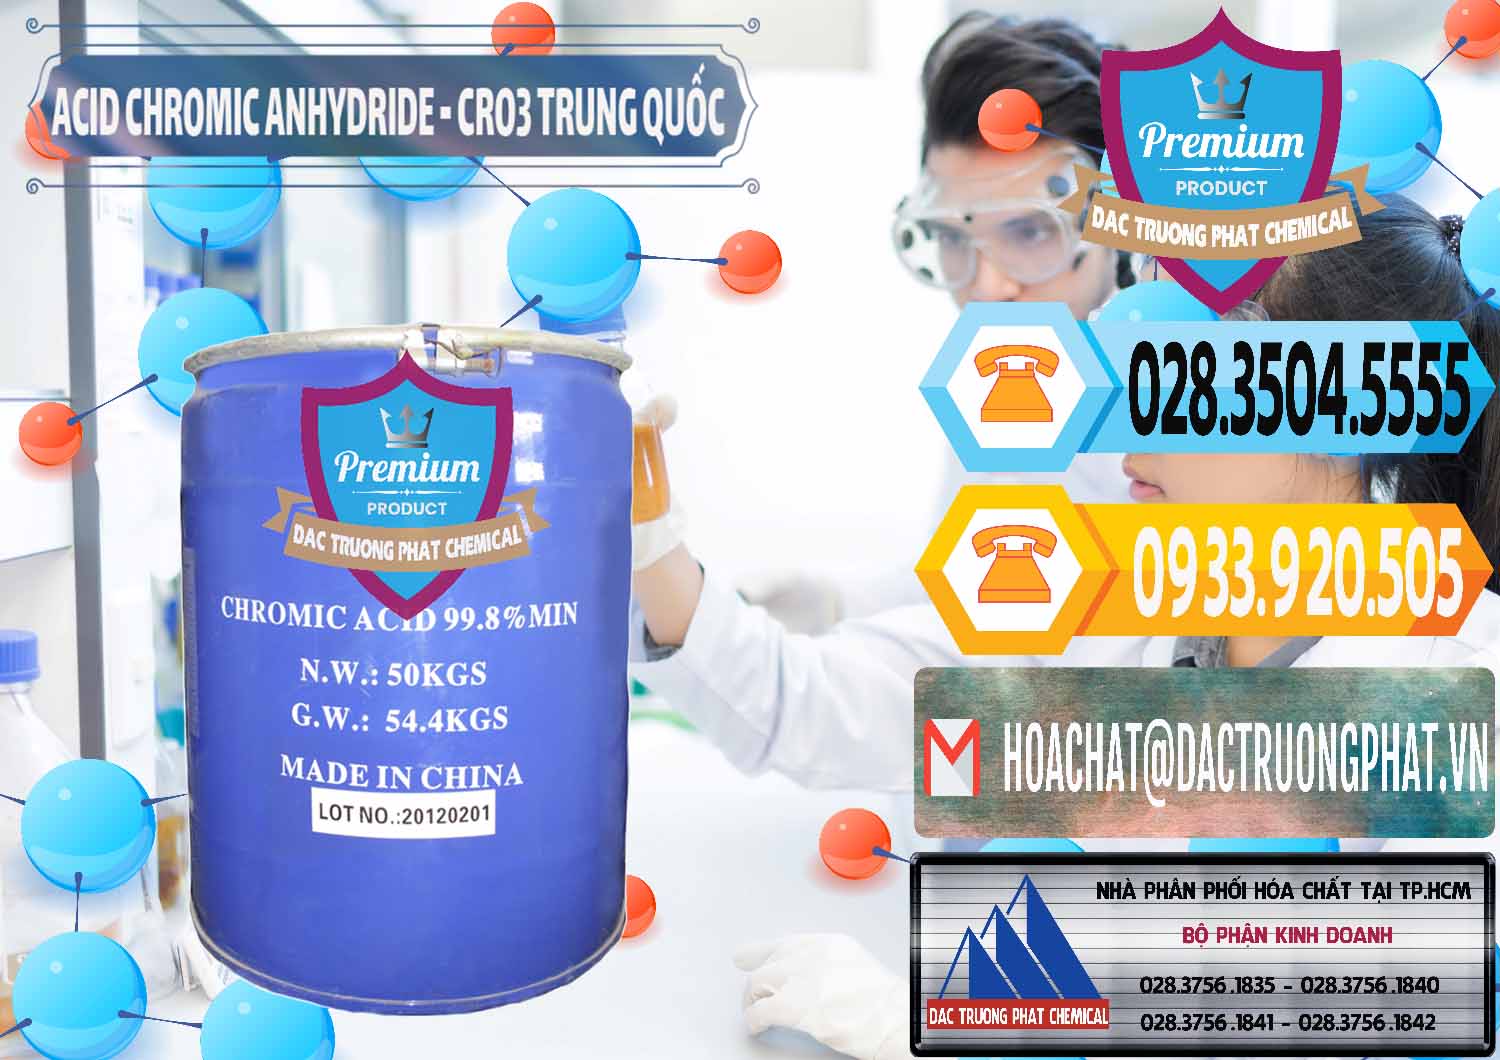 Đơn vị chuyên cung ứng ( bán ) Acid Chromic Anhydride - Cromic CRO3 Trung Quốc China - 0007 - Cty chuyên kinh doanh và phân phối hóa chất tại TP.HCM - hoachattayrua.net